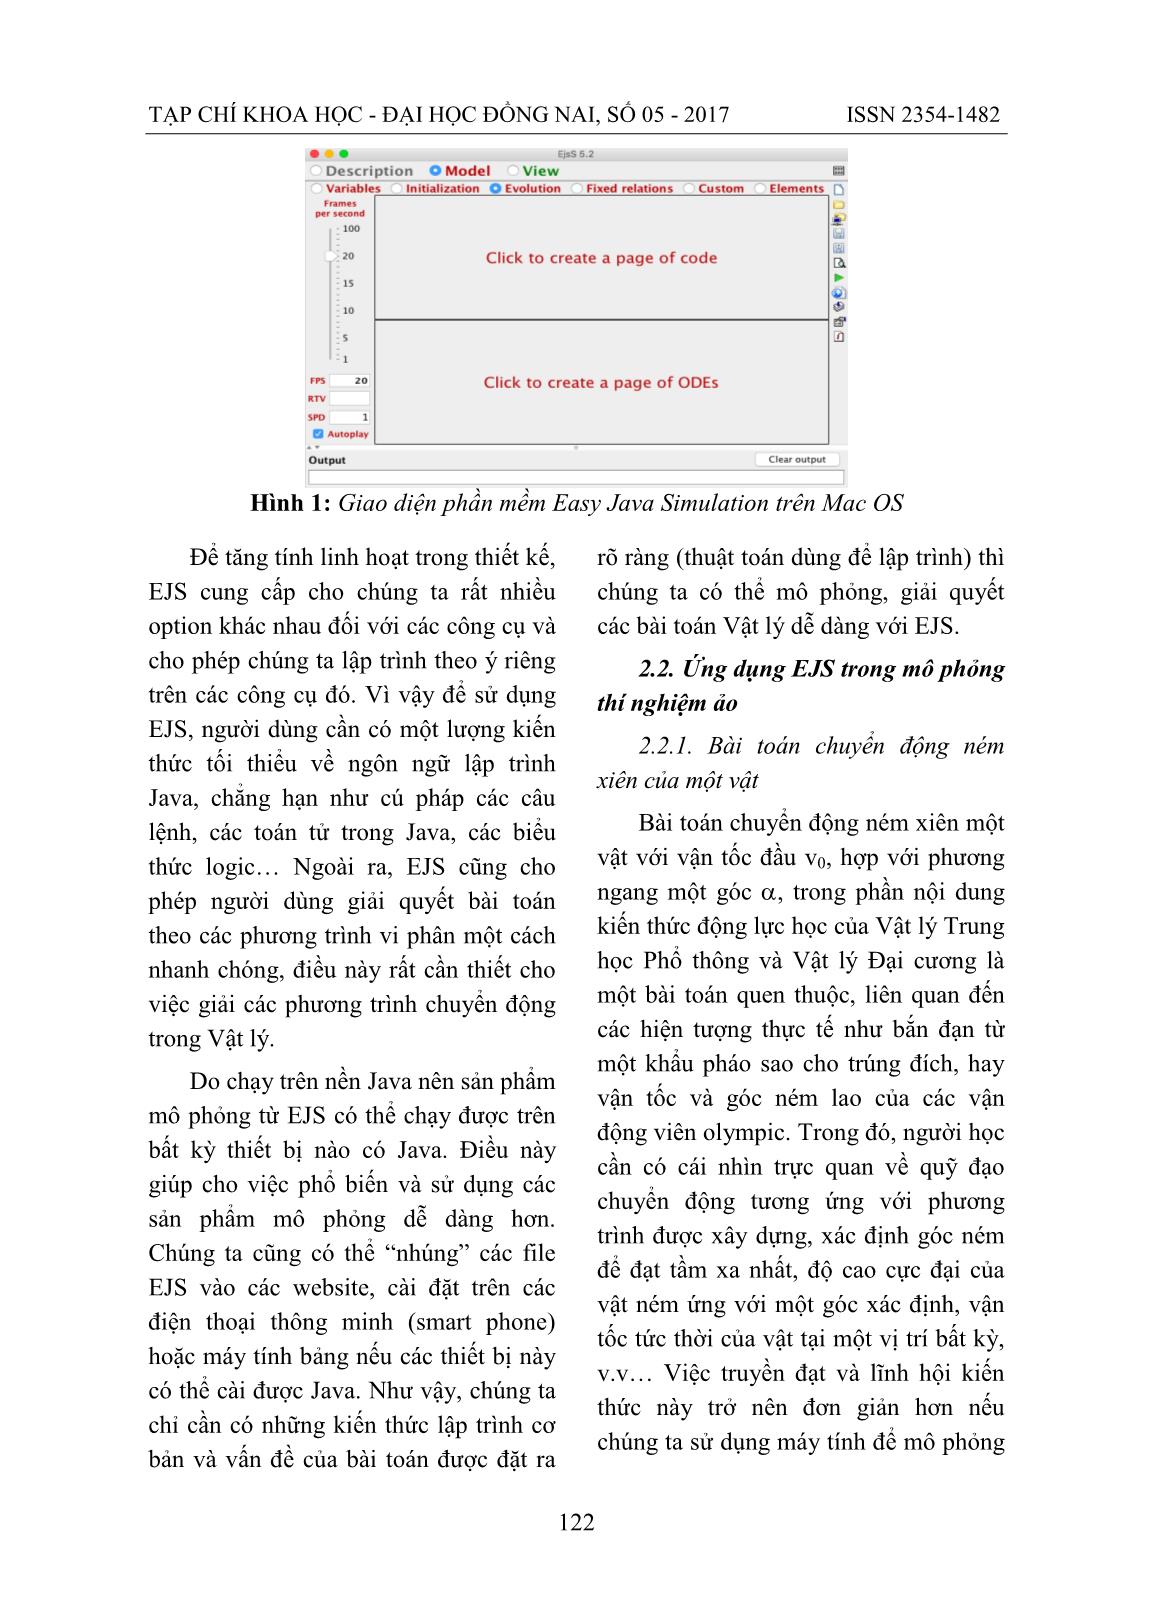 Thí nghiệm vật lý ảo với Easy Java Simulation trang 3